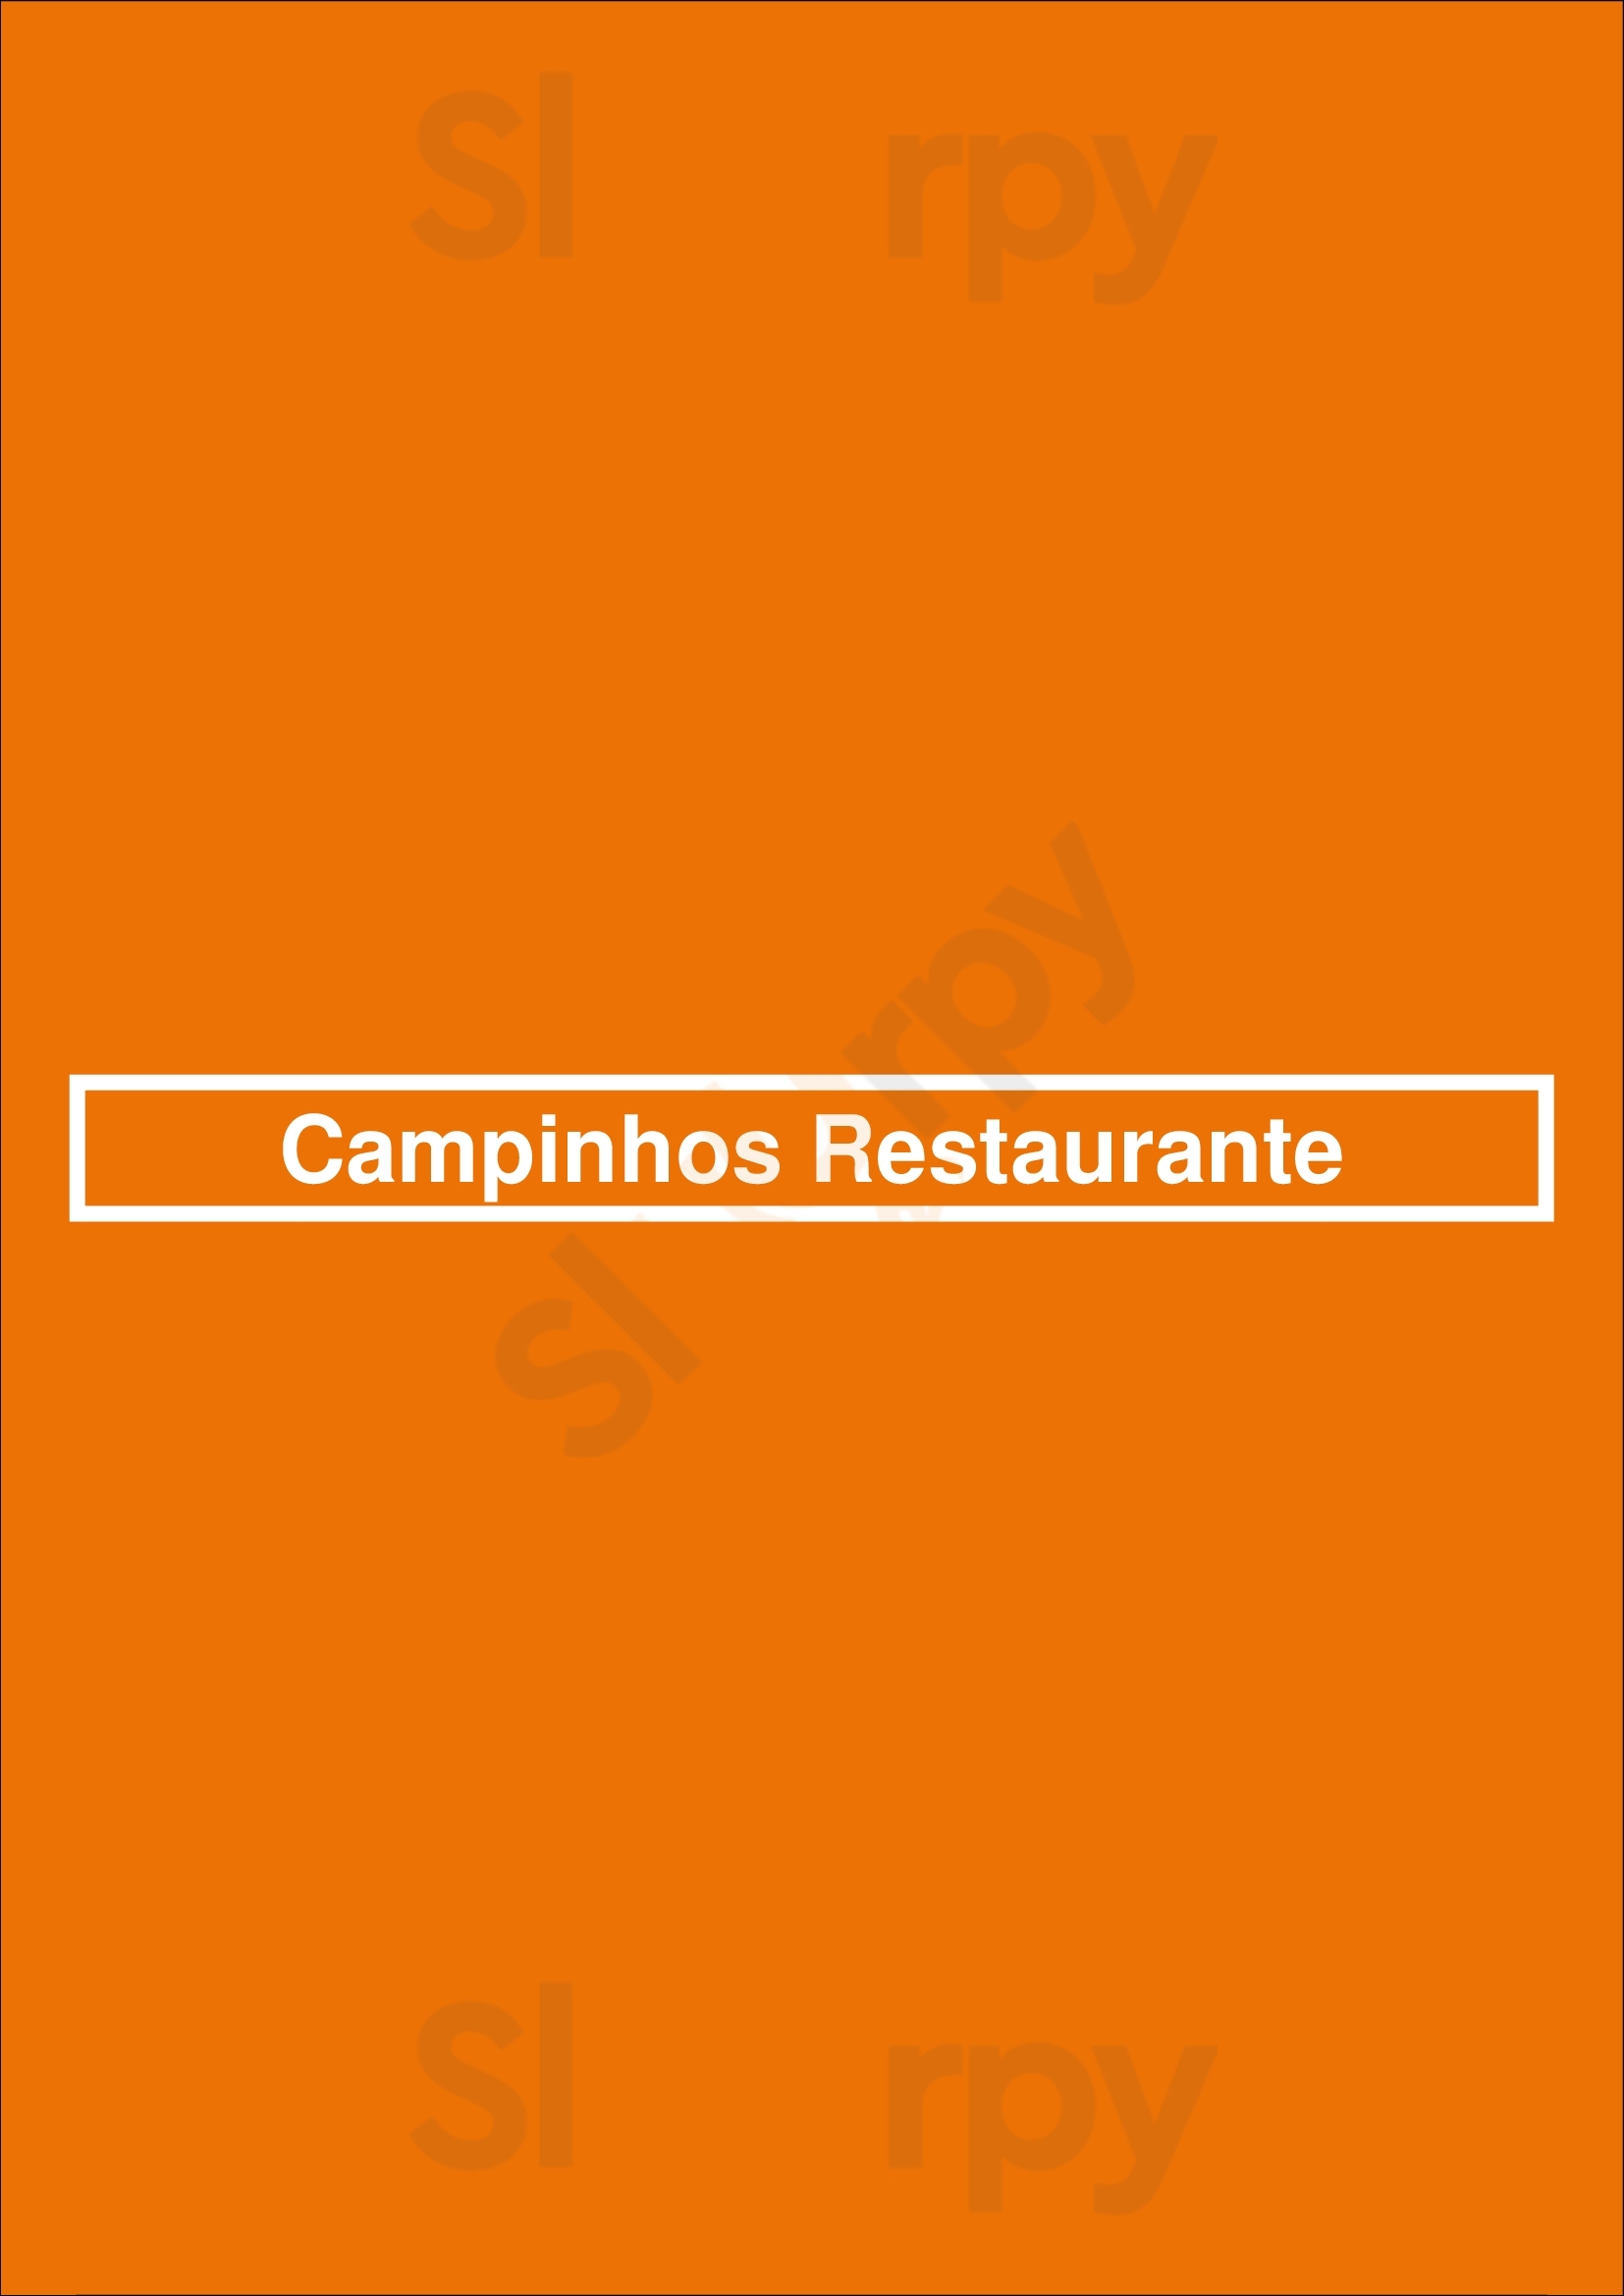 Campinhos Restaurante Santo Tirso Menu - 1